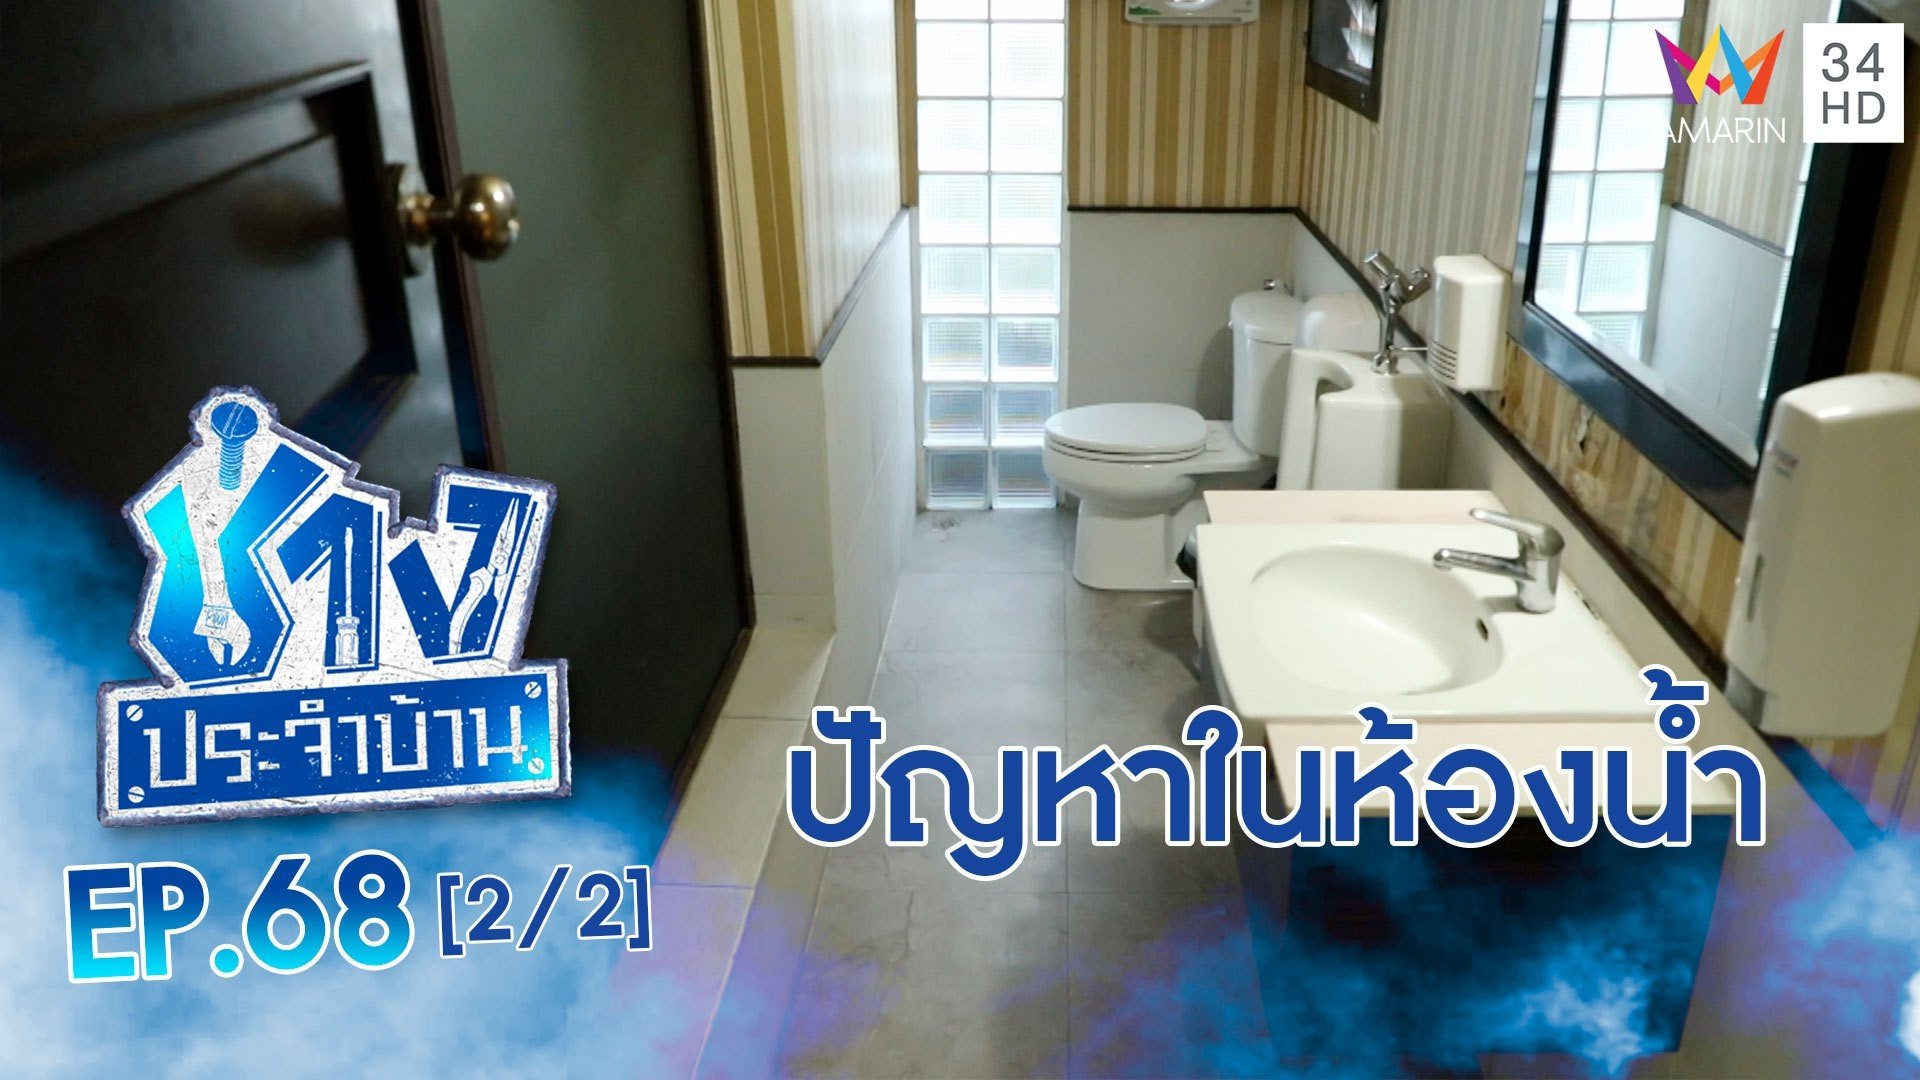 ช่างประจำบ้าน | EP.68 คำถามยอดฮิตที่เกี่ยวกับปัญหาในห้องน้ำ (2/2) | 15 พ.ค. 64 | AMARIN TVHD34